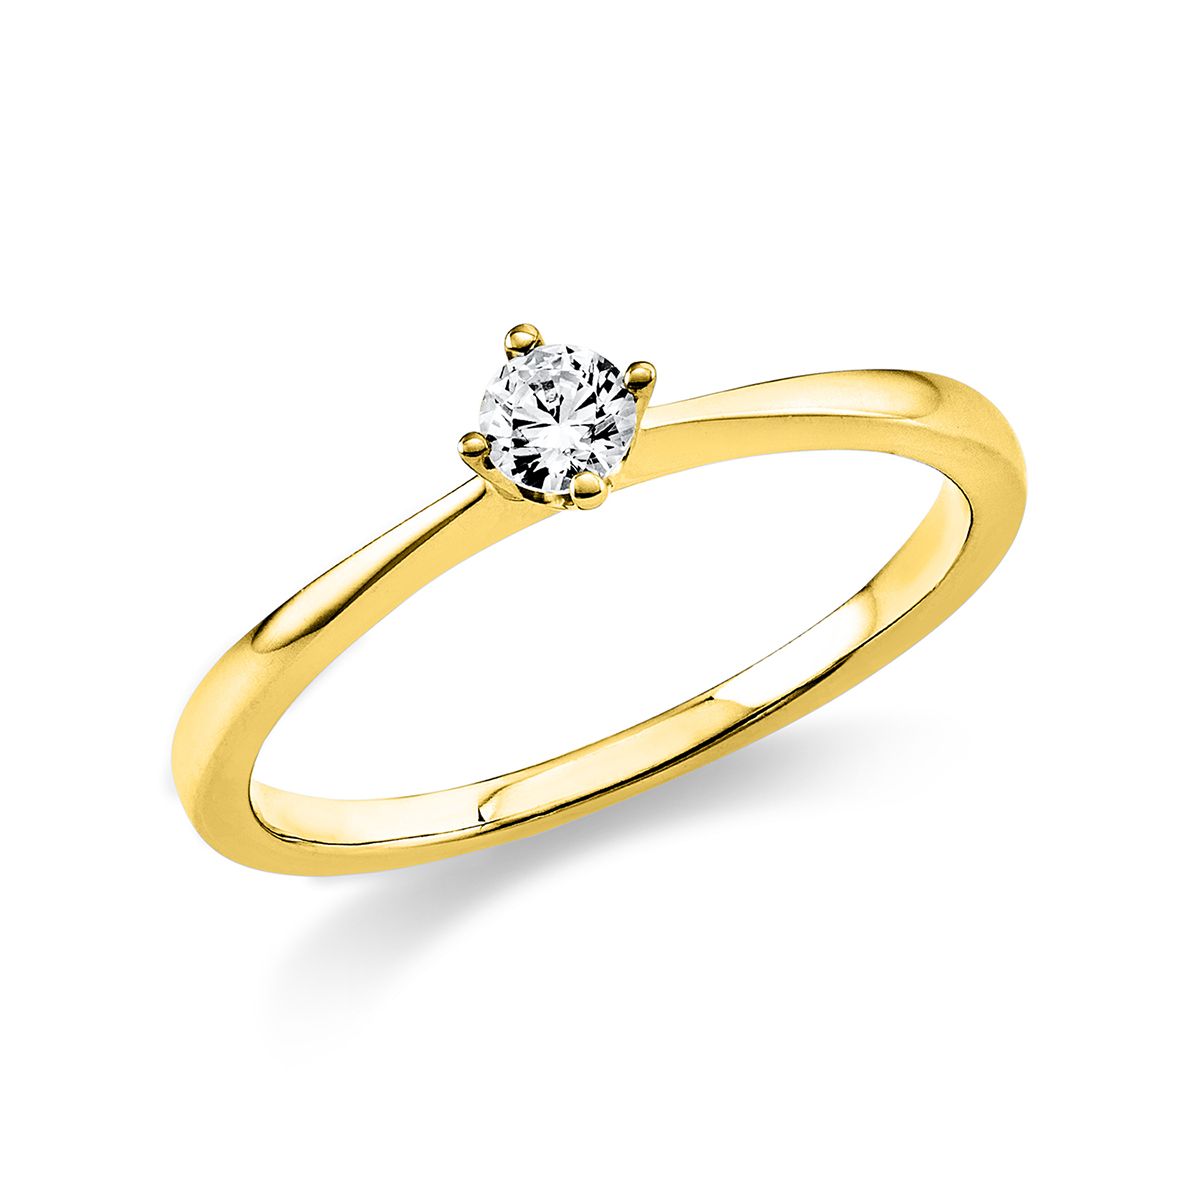 Solitär-Ring 4-Griff-Fassung 585/14K Gelbgold, Diamant 0.15 ct.